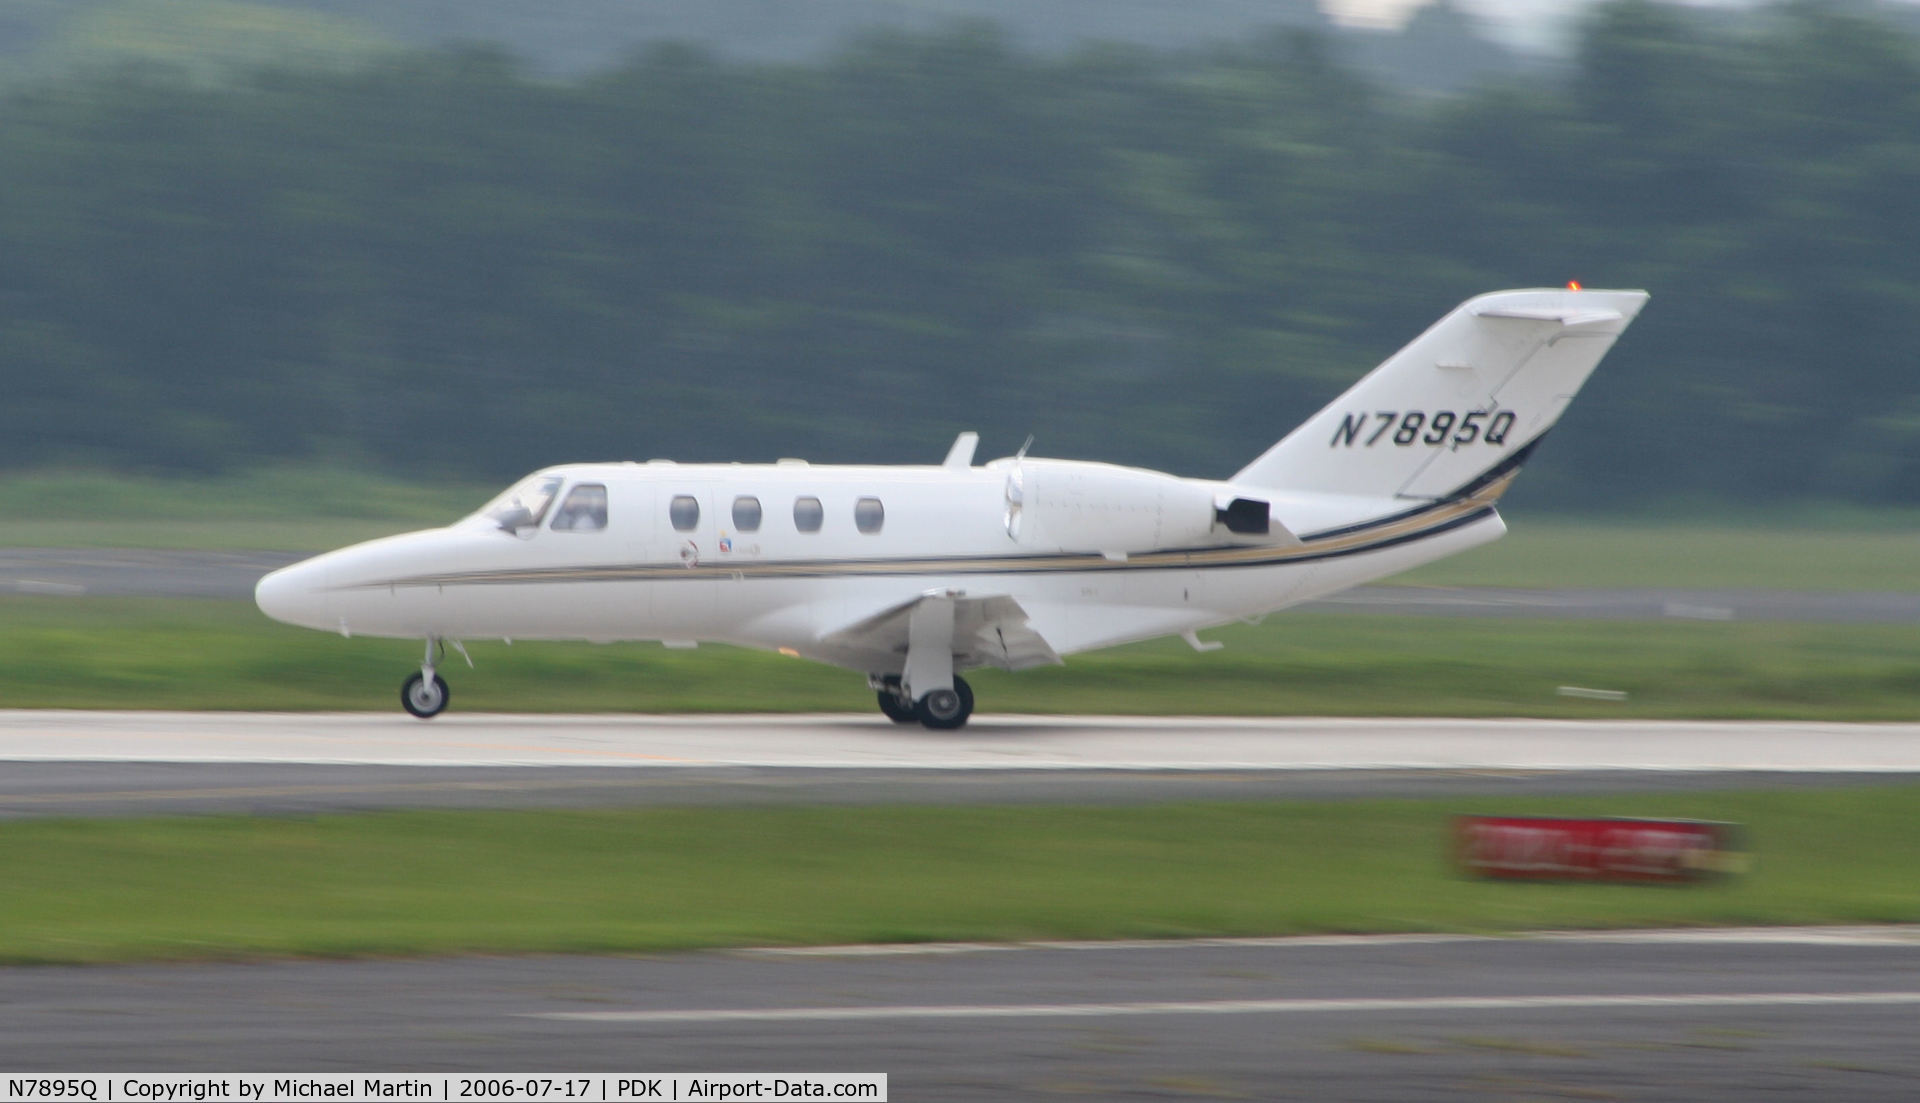 N7895Q, 2000 Cessna 525 C/N 525-0405, Departing Runway 2R